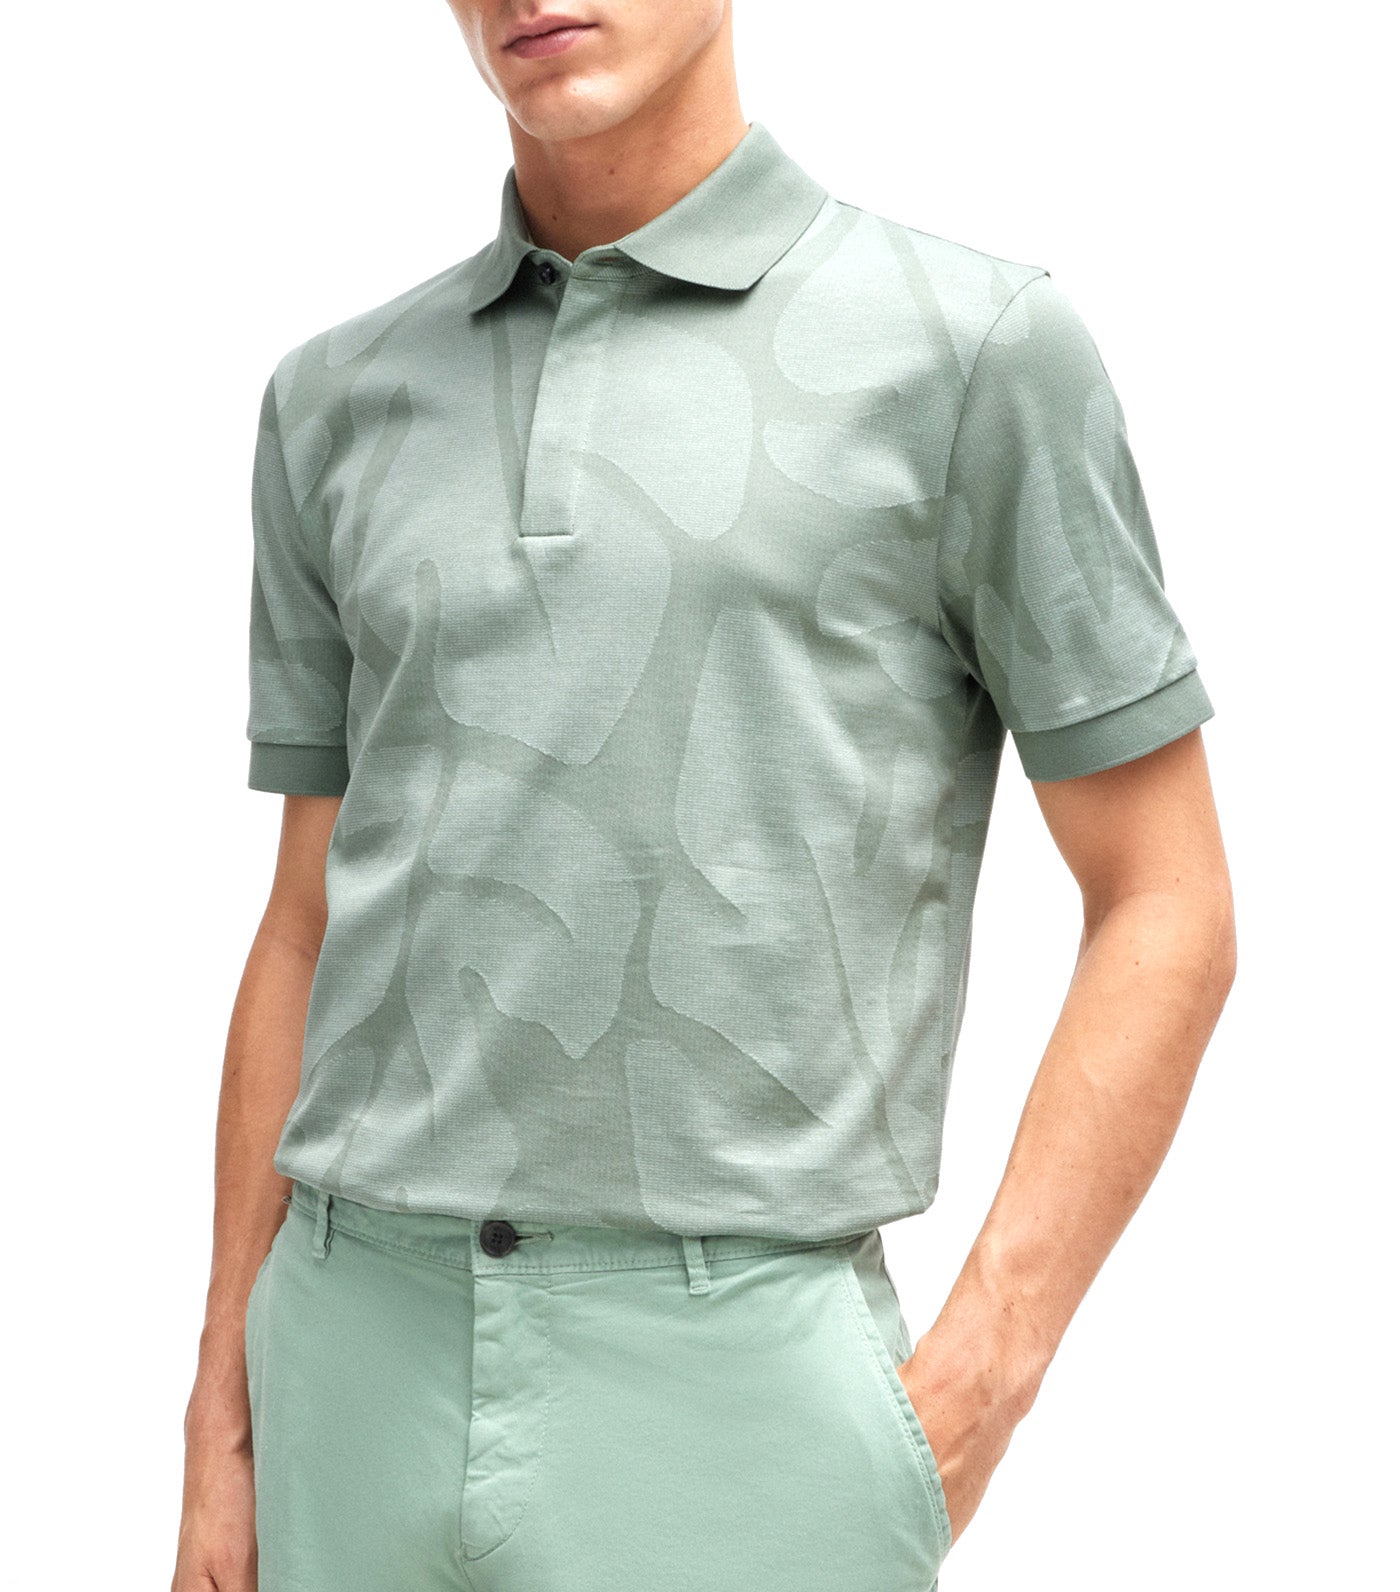 Penrose 108 59960 Polo Shirt Green